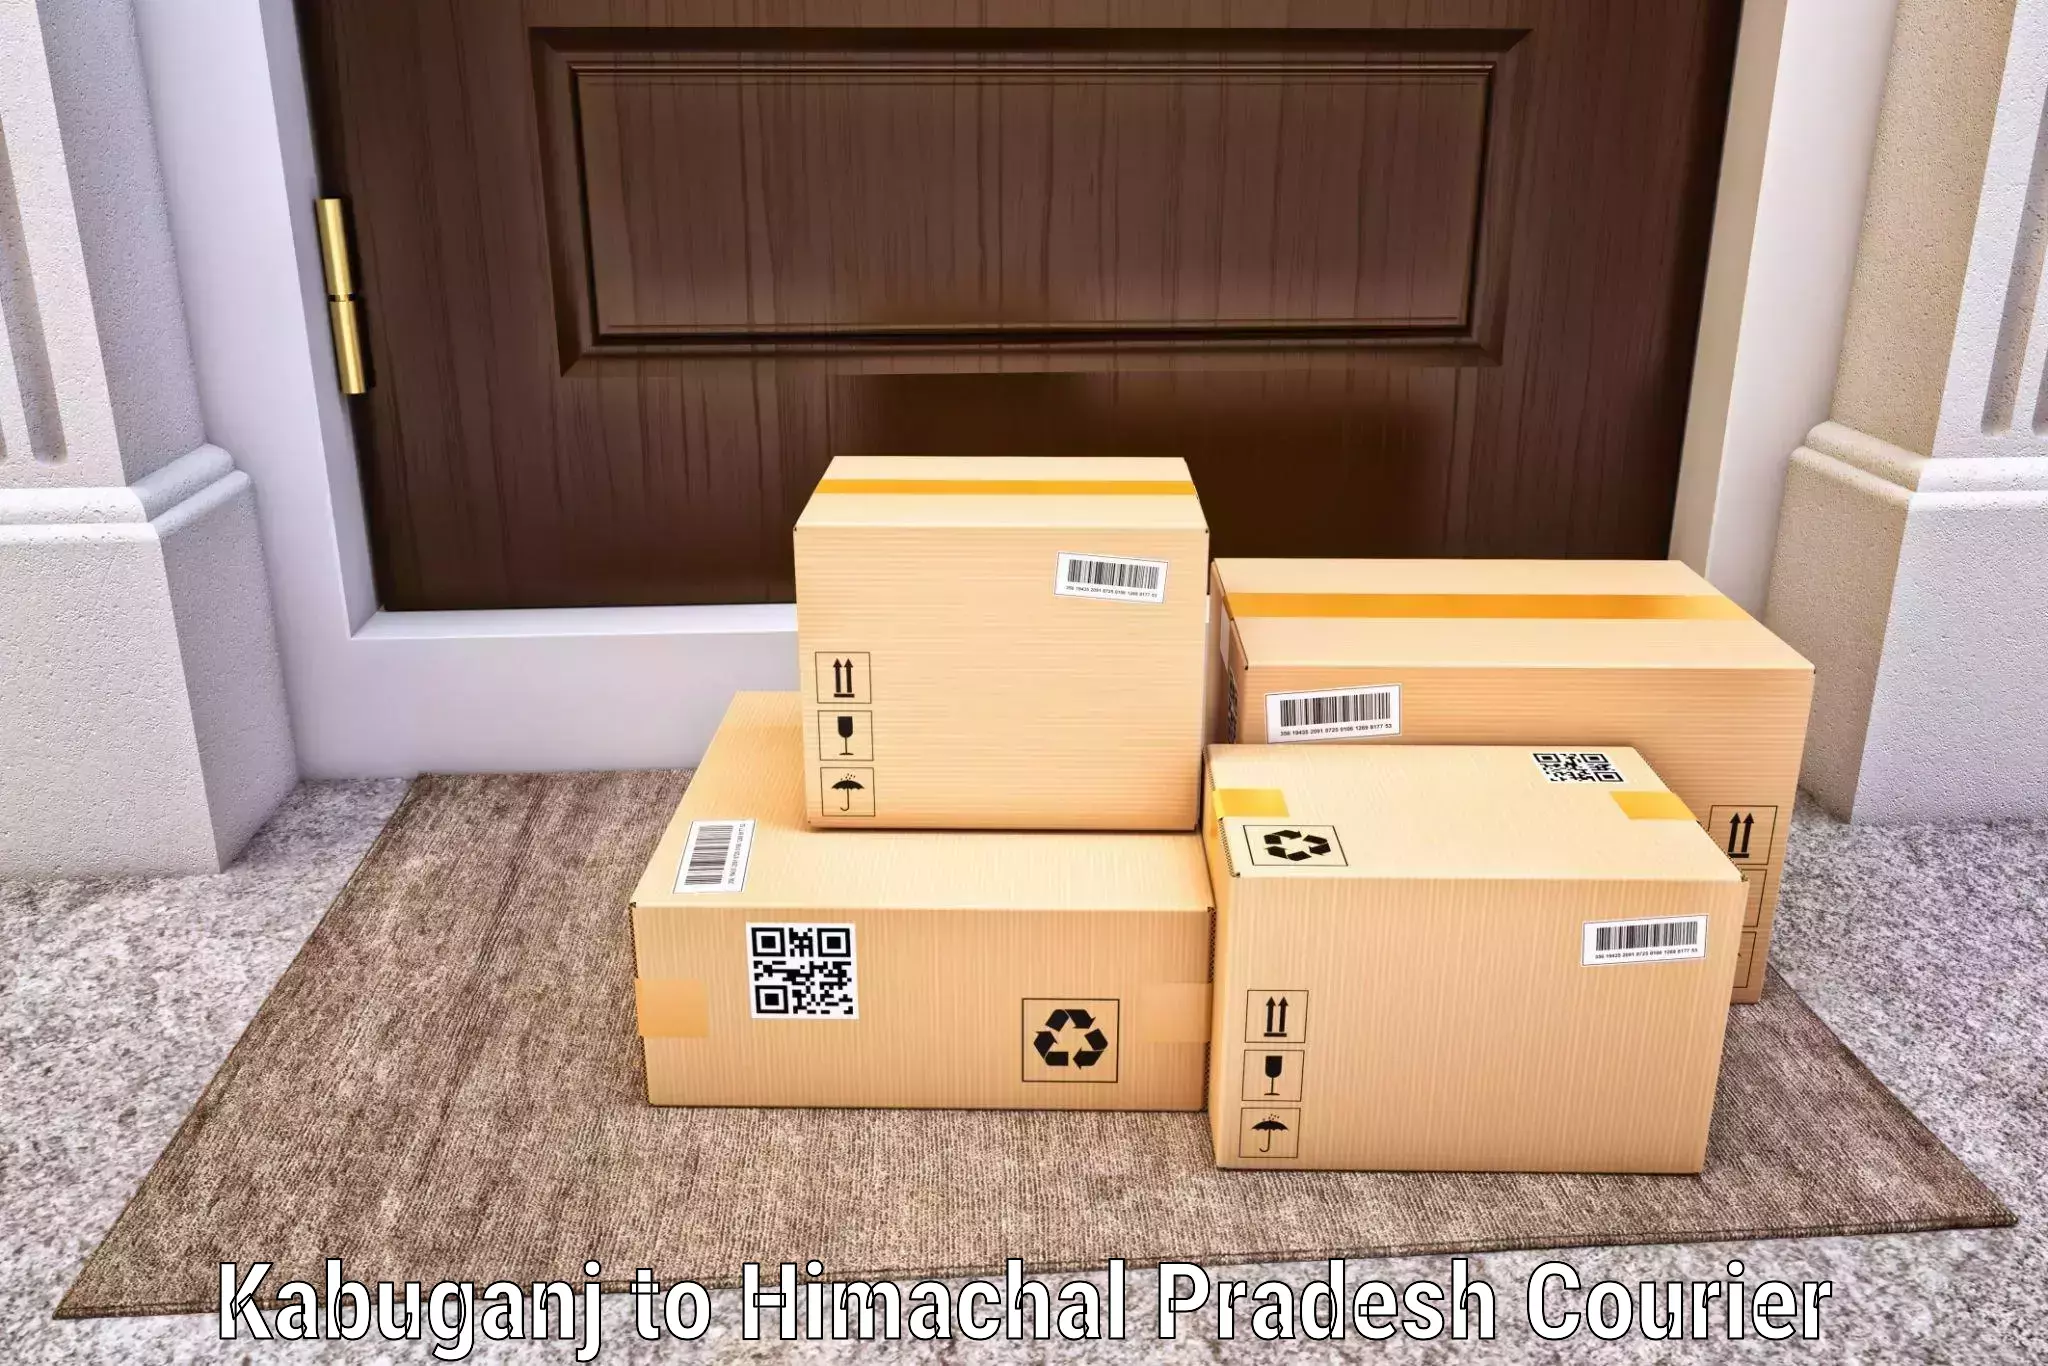 Large package courier Kabuganj to Raipur Sahoran